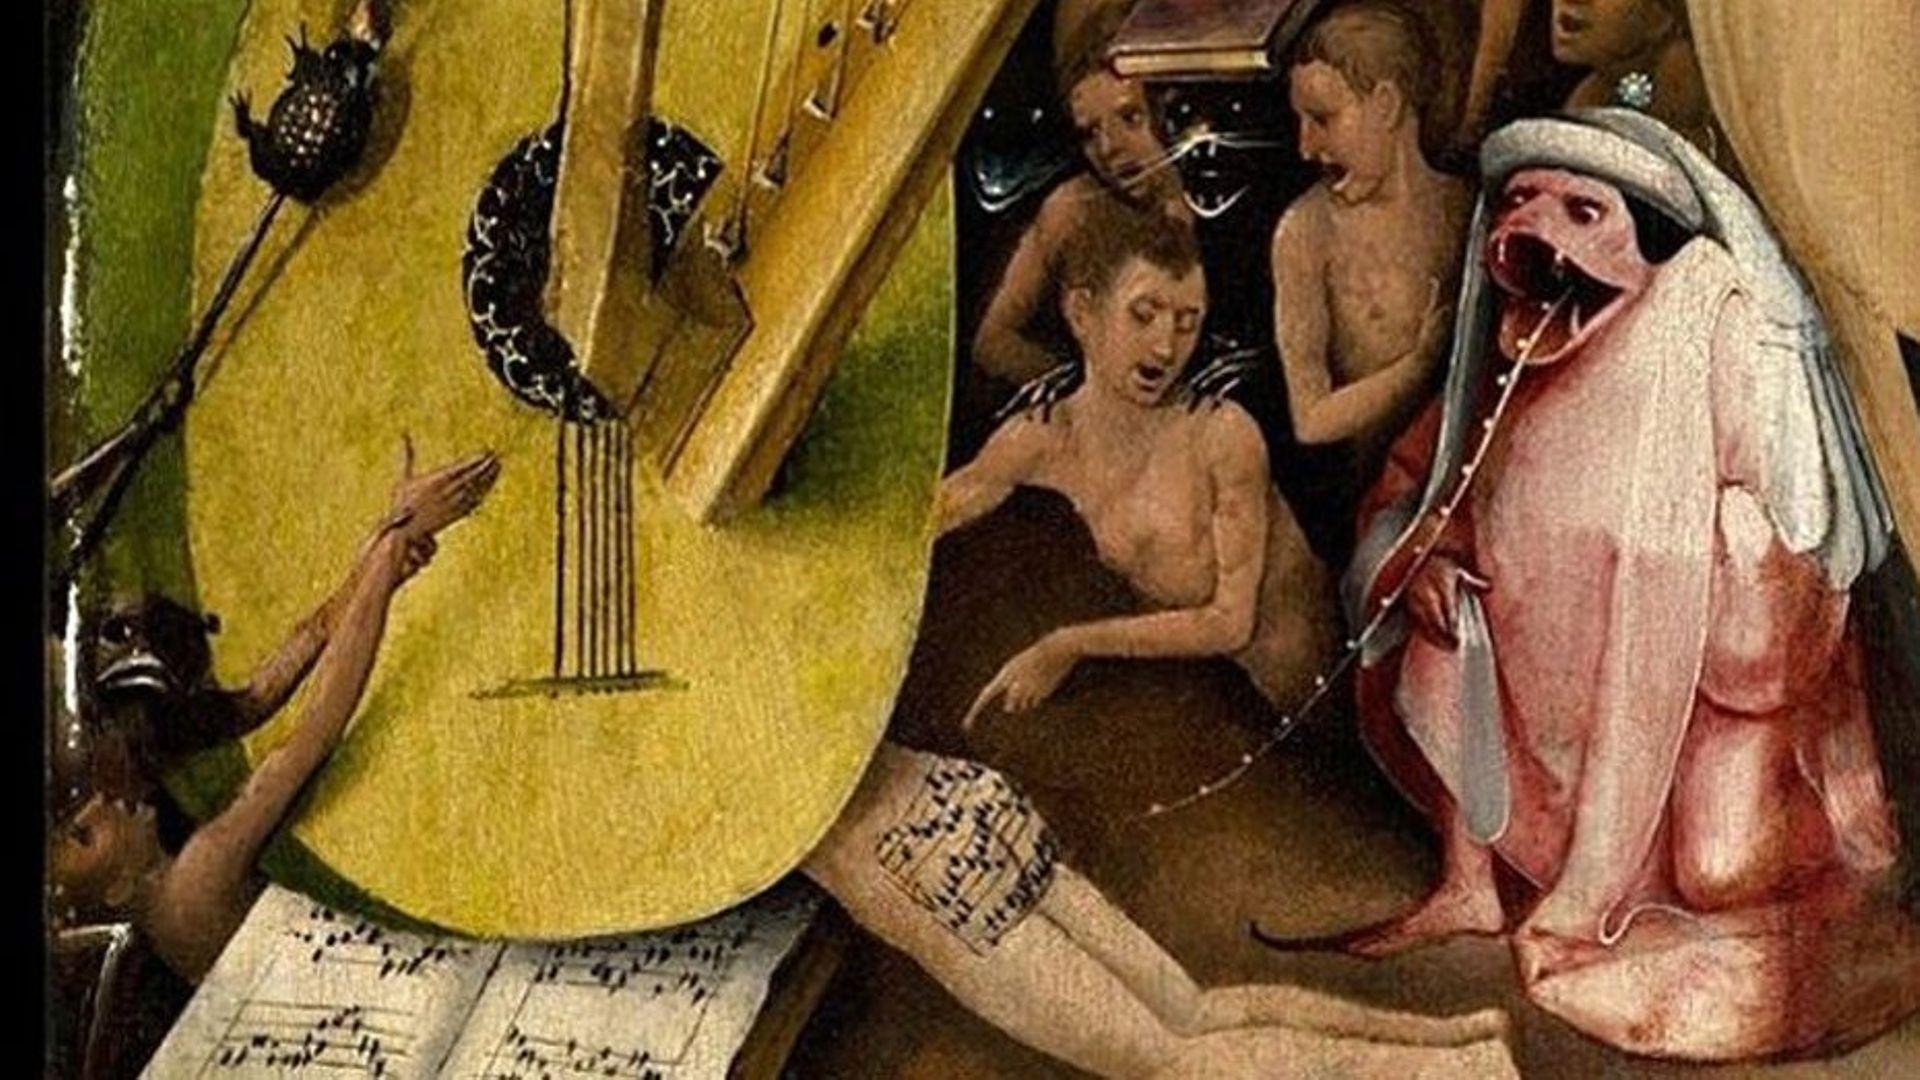 Partie du panneau de l’Enfer, où l’on voit les fesses d’un pécheur sur lesquelles est tatouée une partition de musique